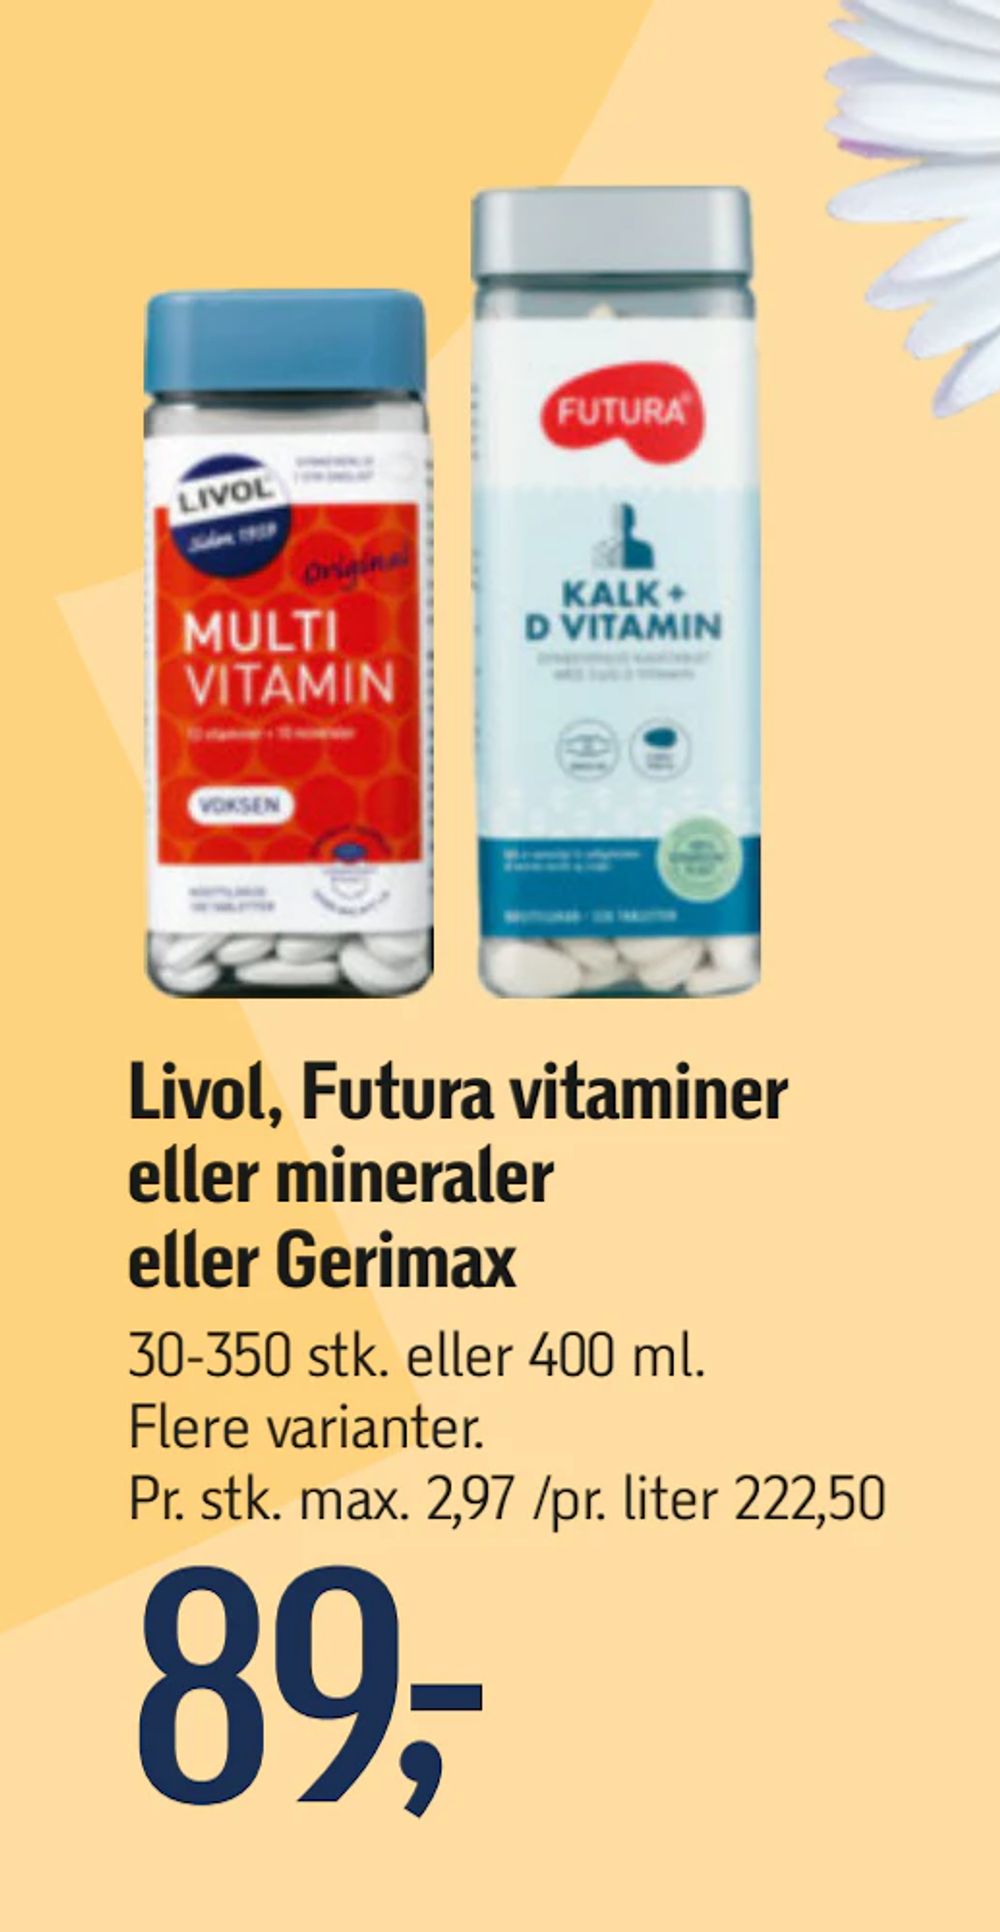 Tilbud på Livol, Futura vitaminer eller mineraler eller Gerimax fra føtex til 89 kr.